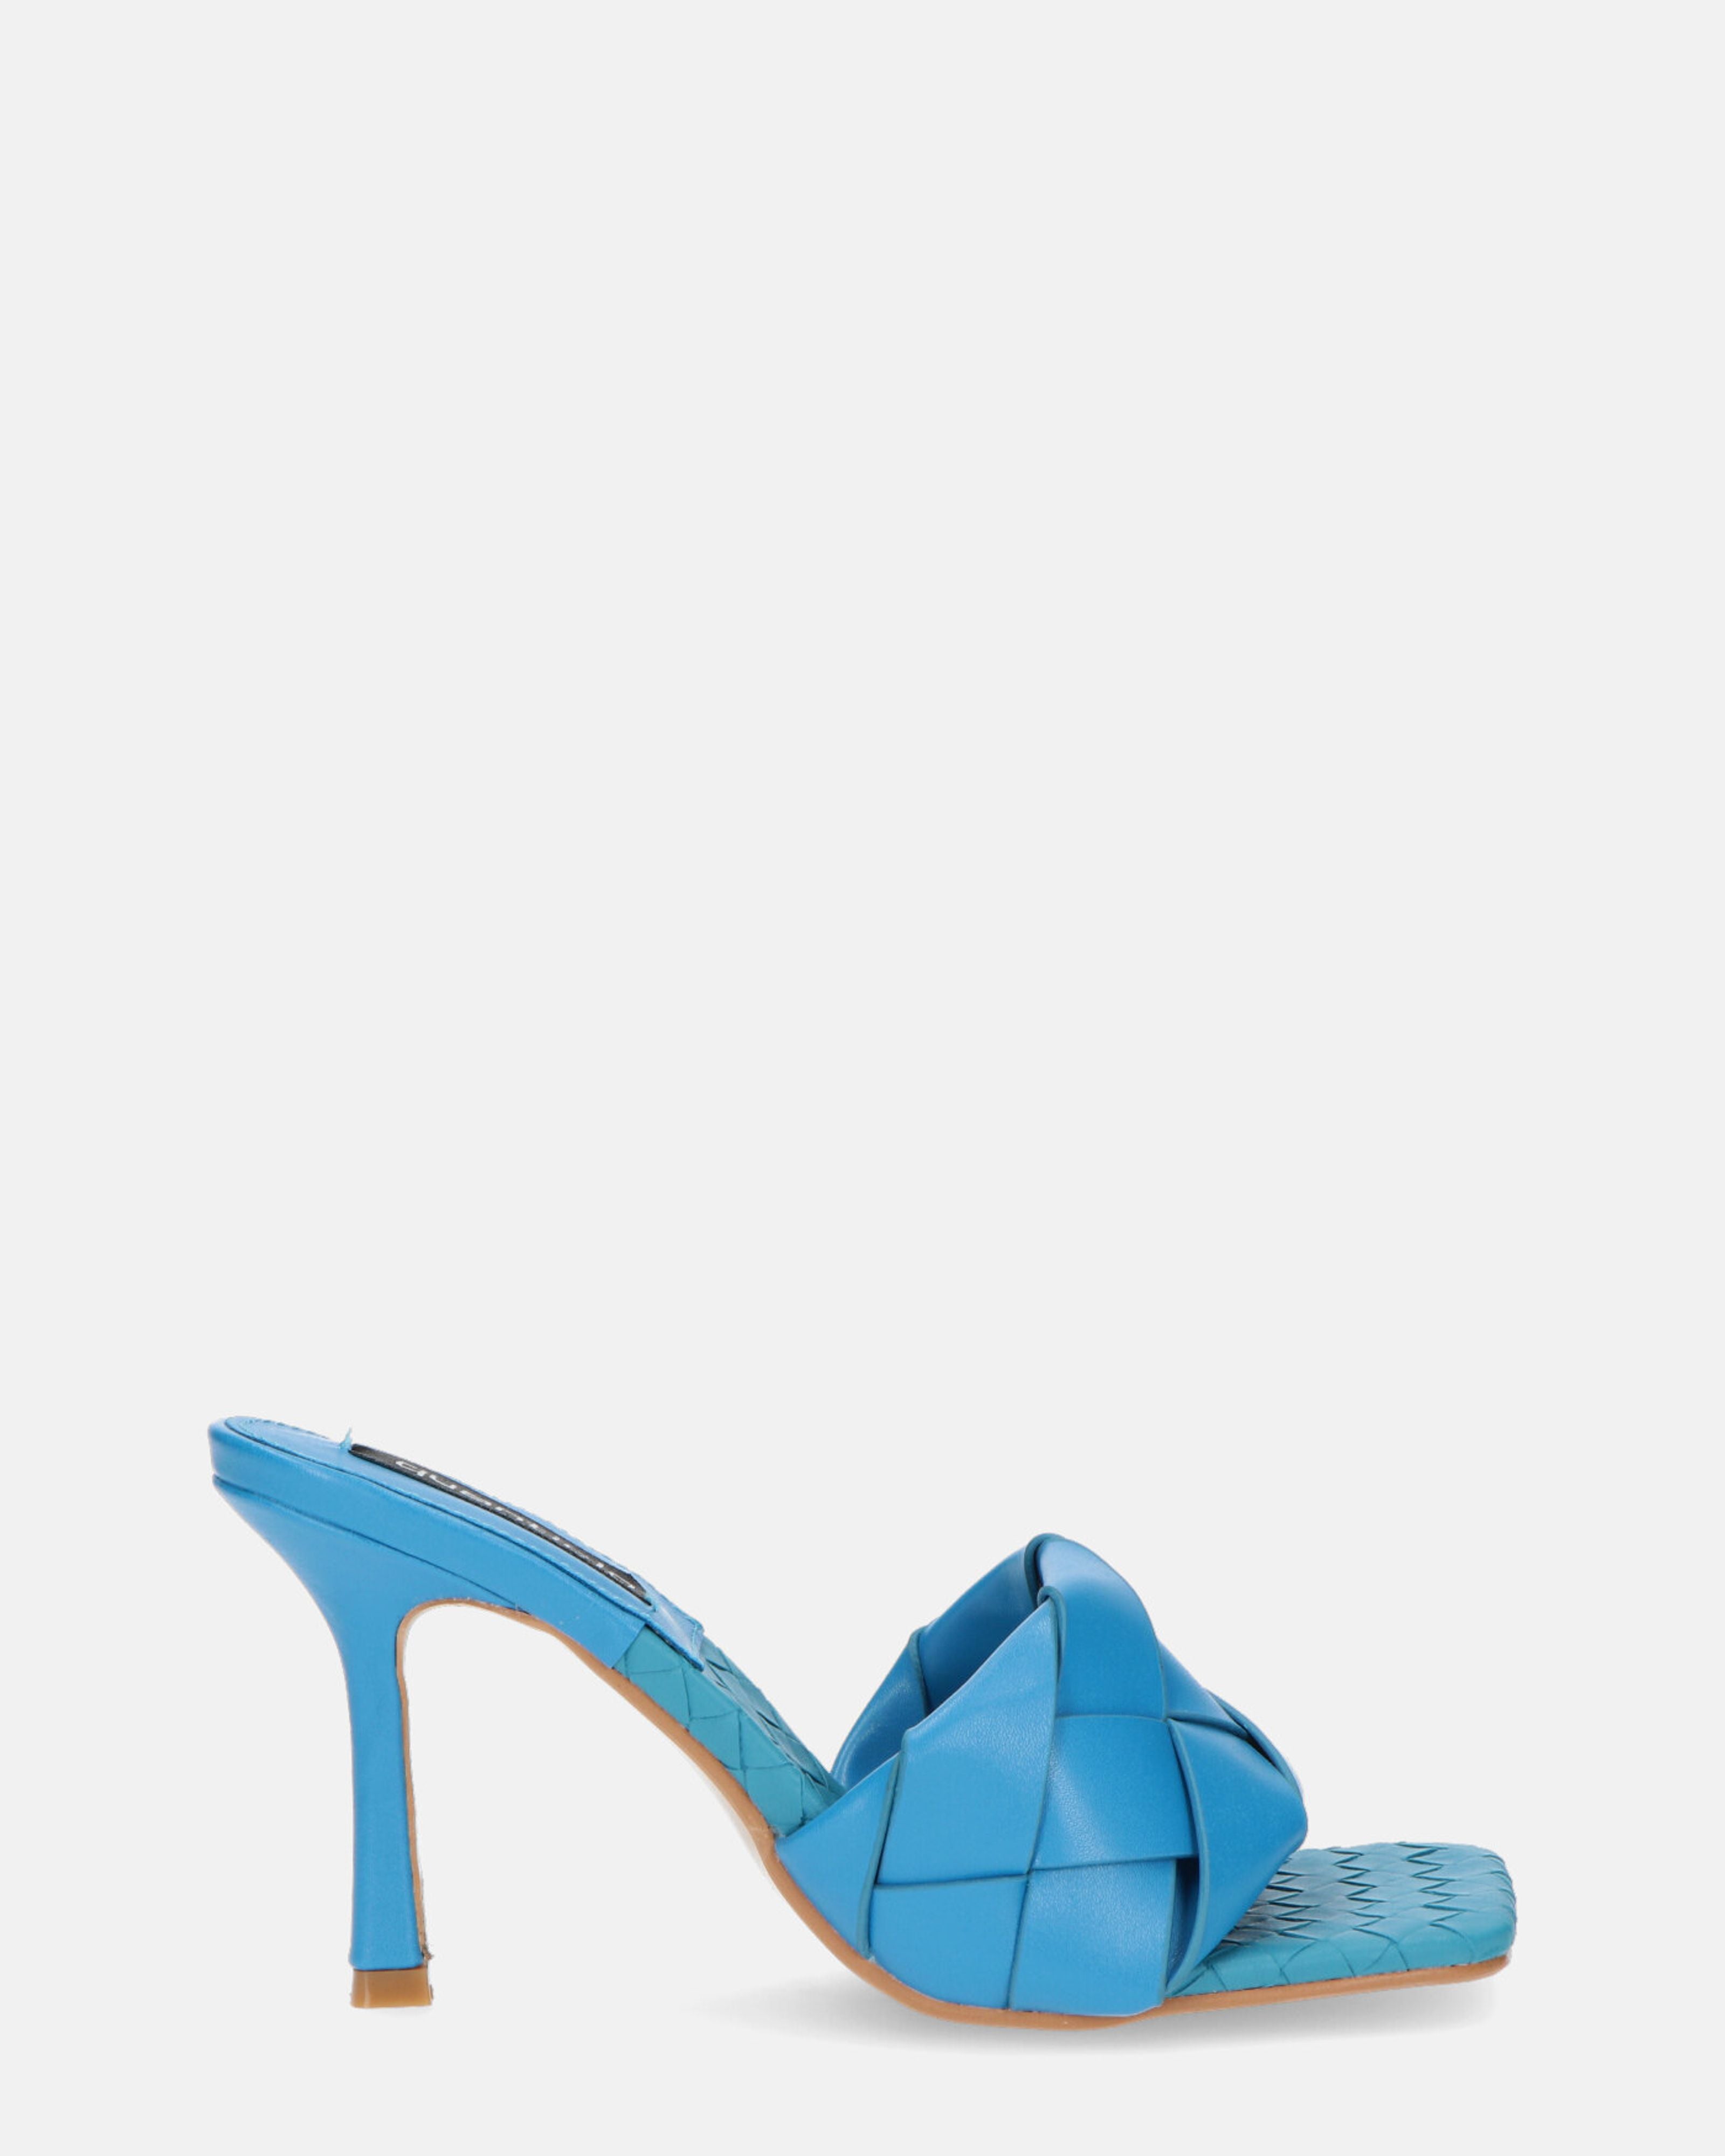 ENRICA - sandalo in pelle blu intrecciata con tacco